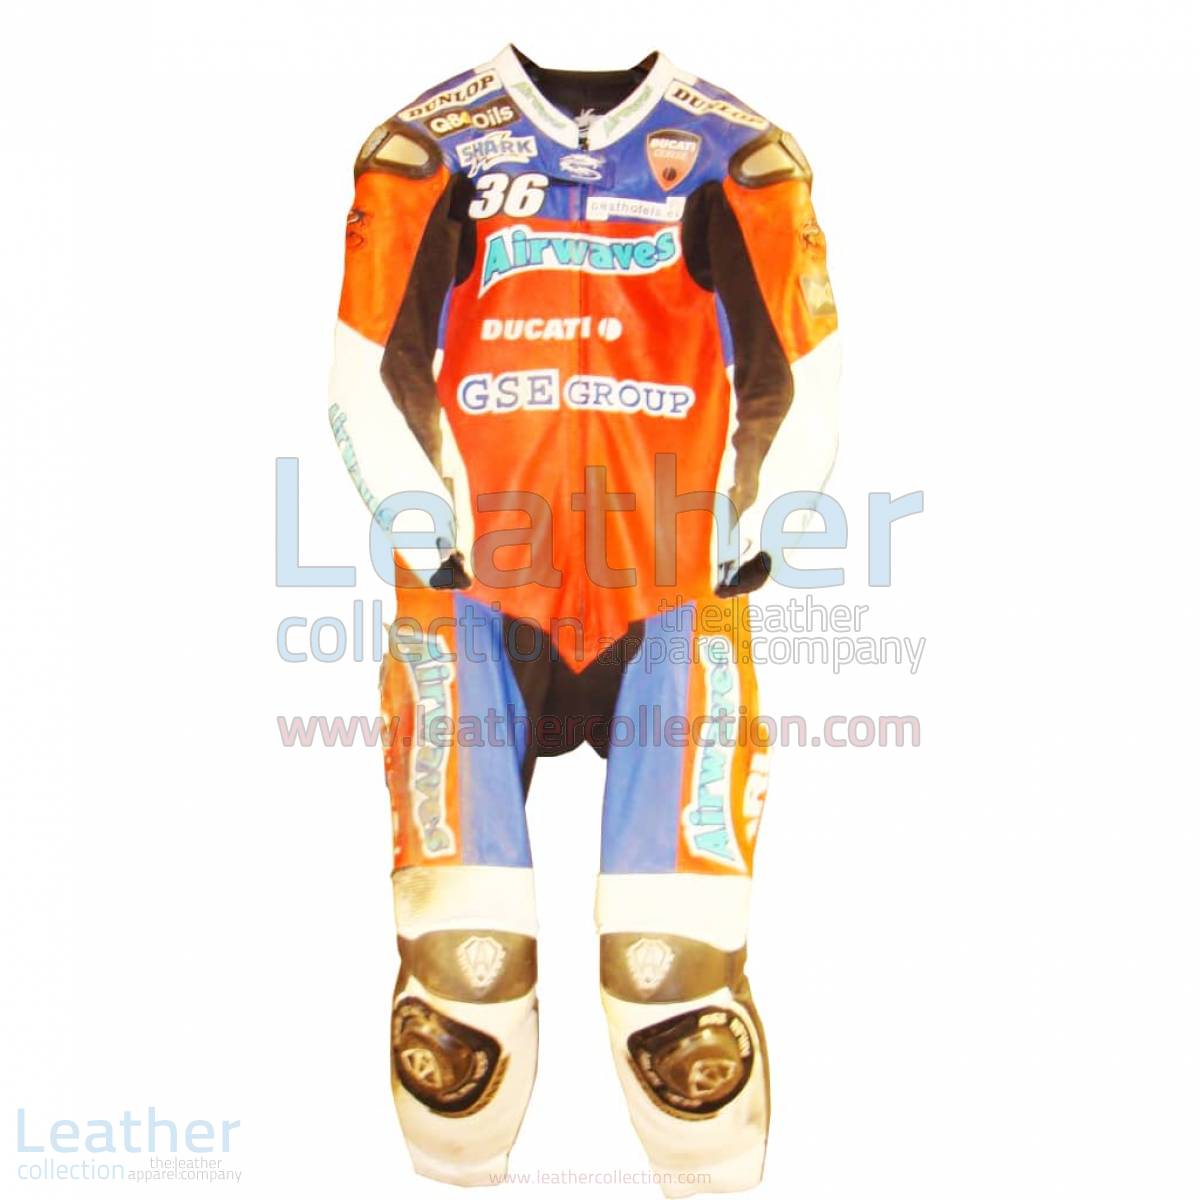 Gregorio Lavilla Ducati BSB 2005 Race Suit